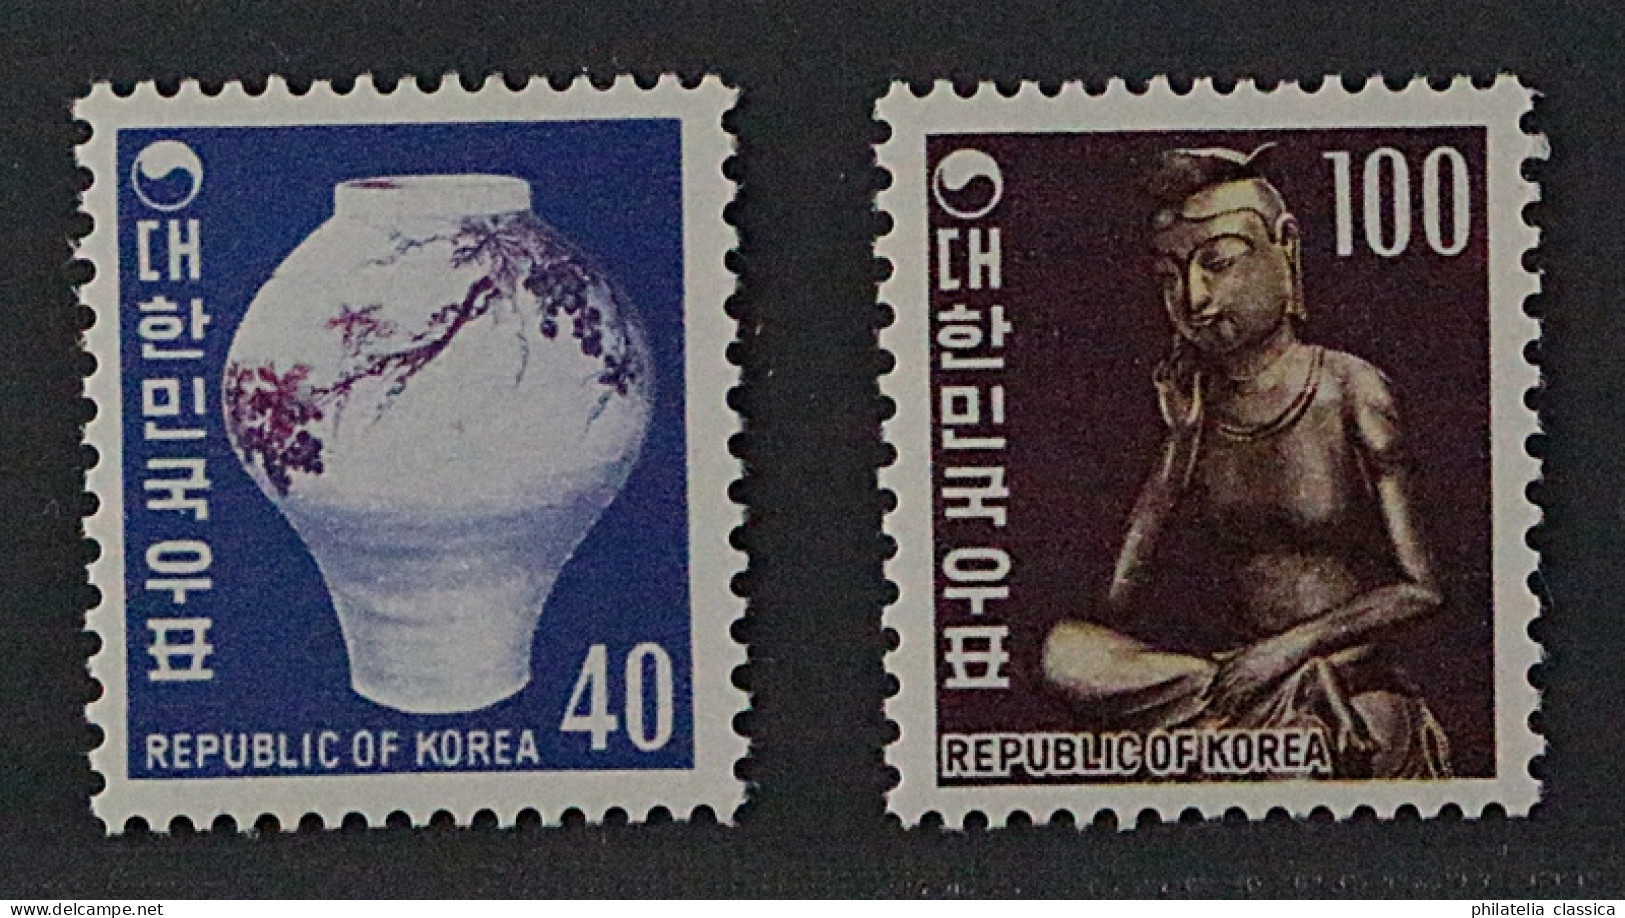 SÜD-KOREA 657-58 **  1969, Höchstwerte 40 + 100 W., Postfrisch, KW 127,- € - Korea (Süd-)